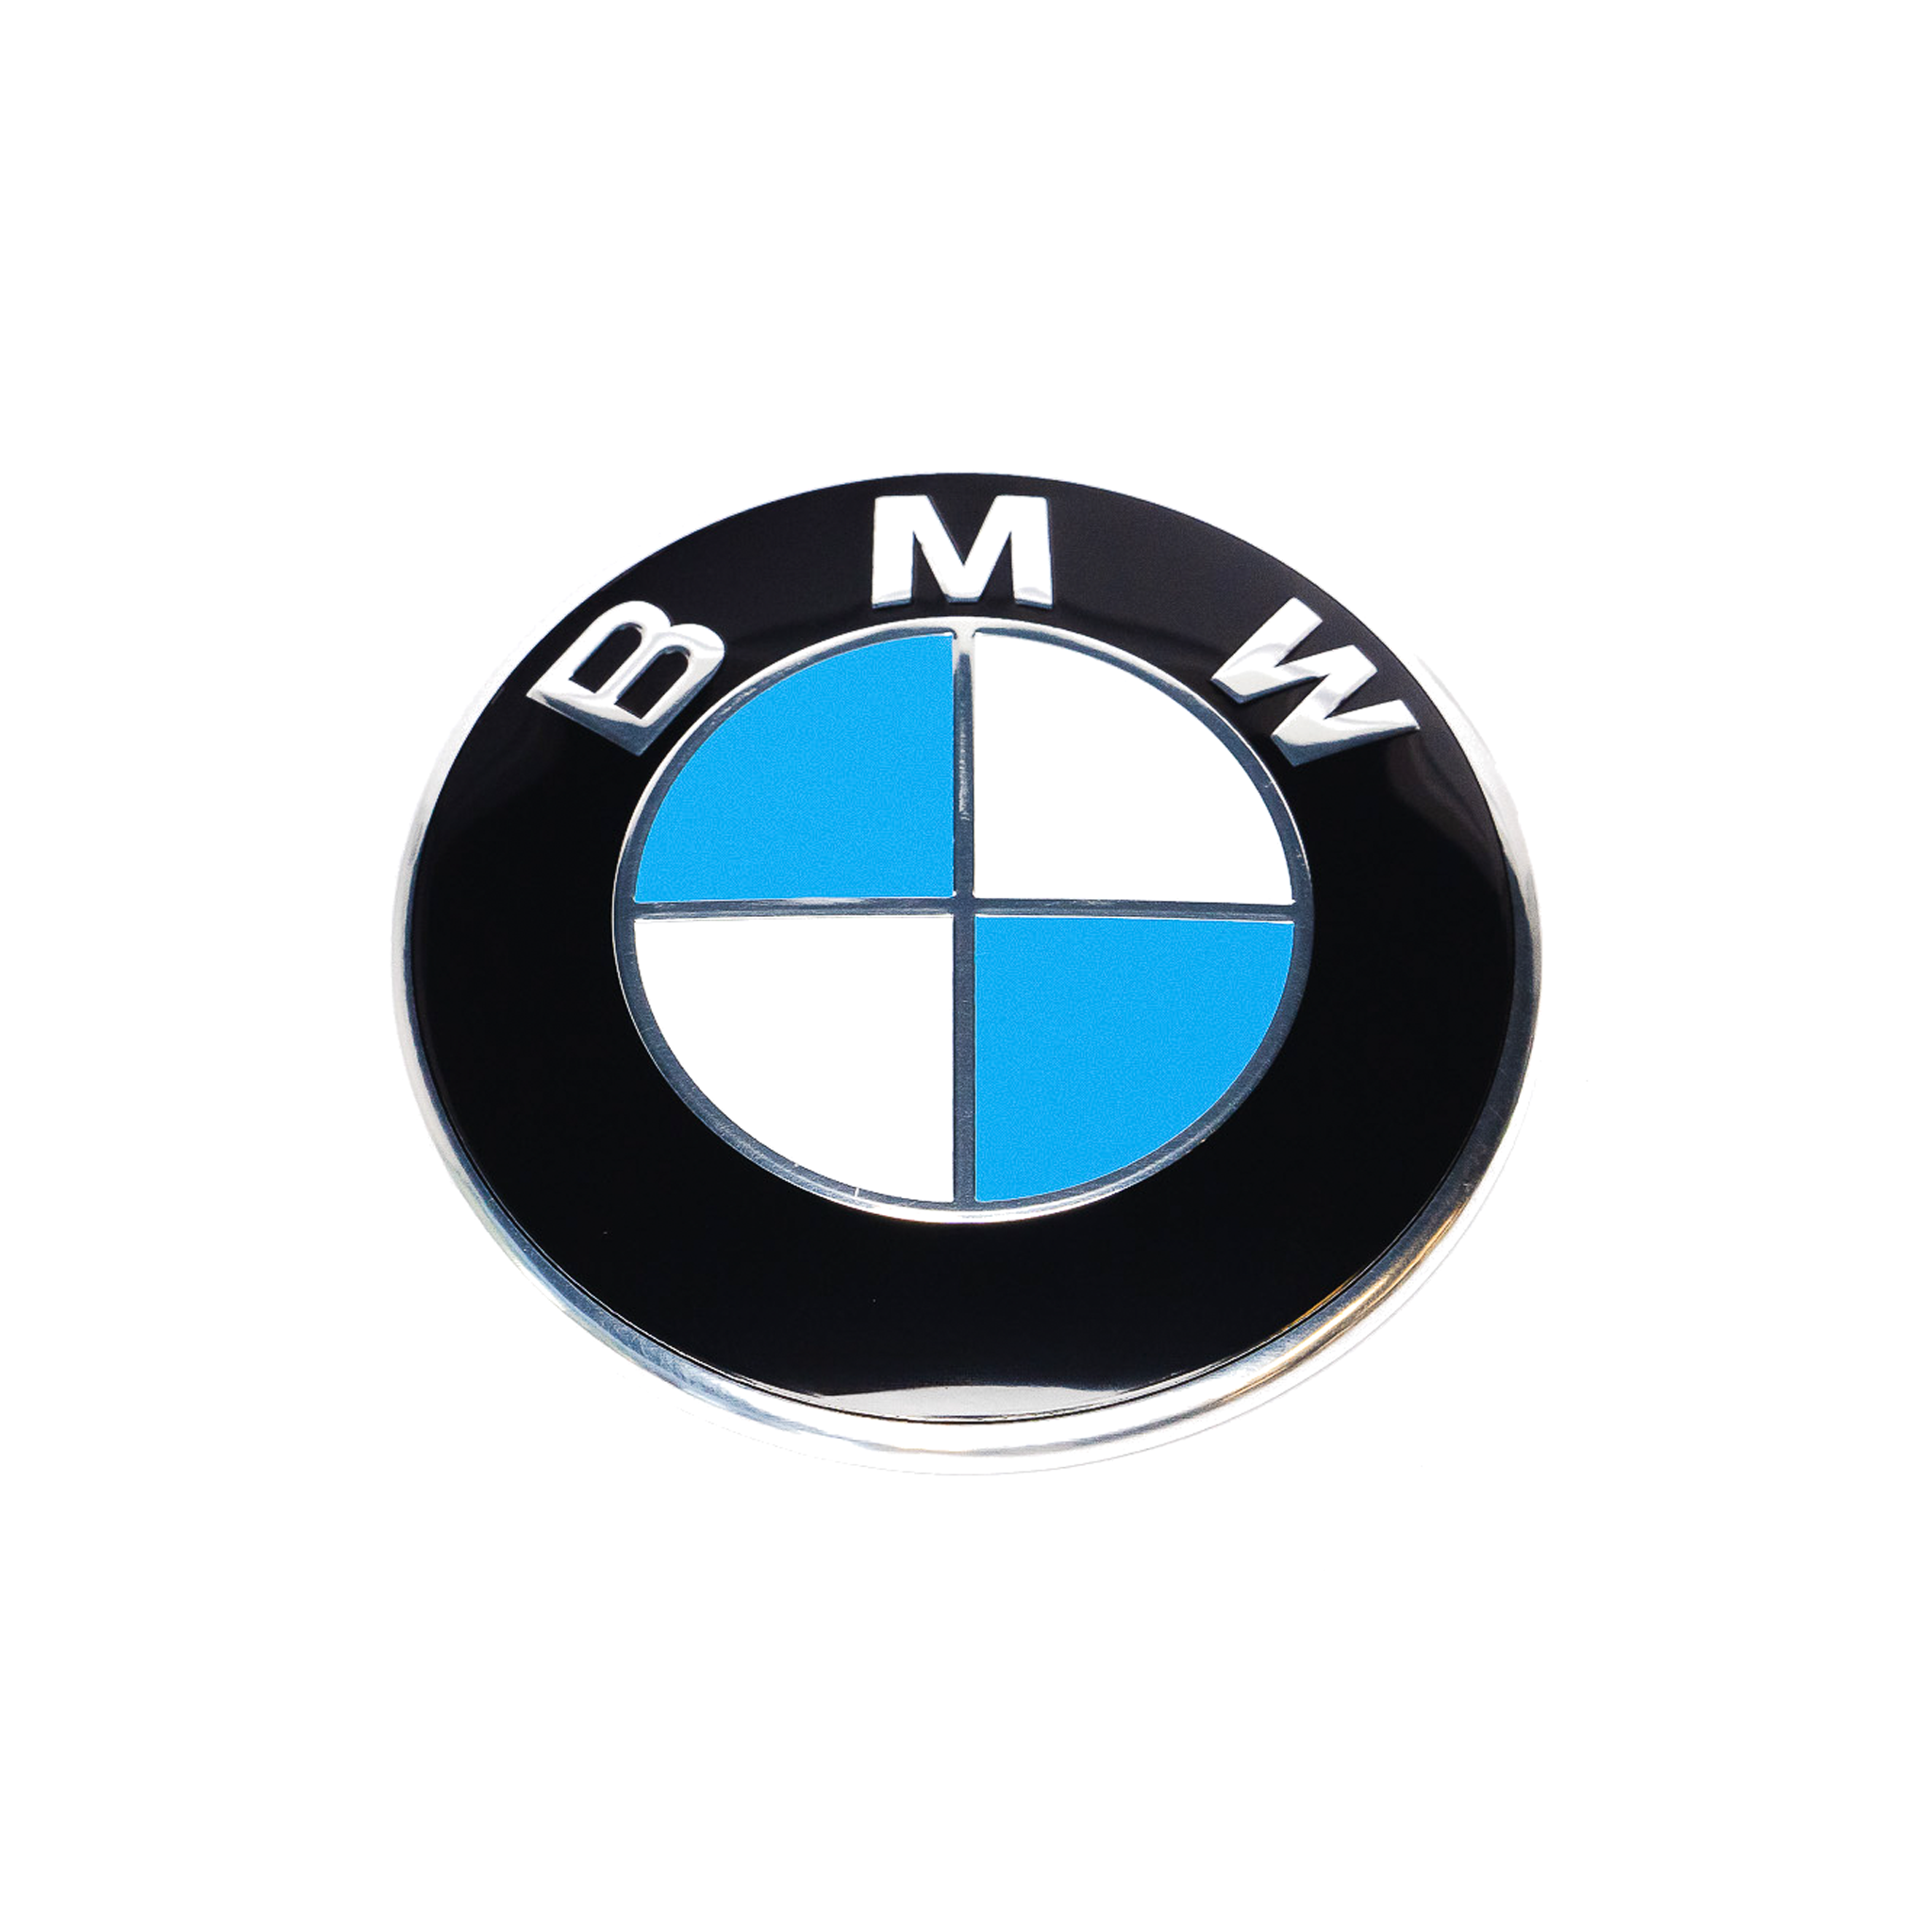 Exon BMW estilo azul/blanco insignia frontal emblema para BMW F-Series M2 F87 M3 F80 M4 F82 M5 F10 M6 F12 F13 y 1 2 3 4 5 6 Series F20 F22 F30 F32